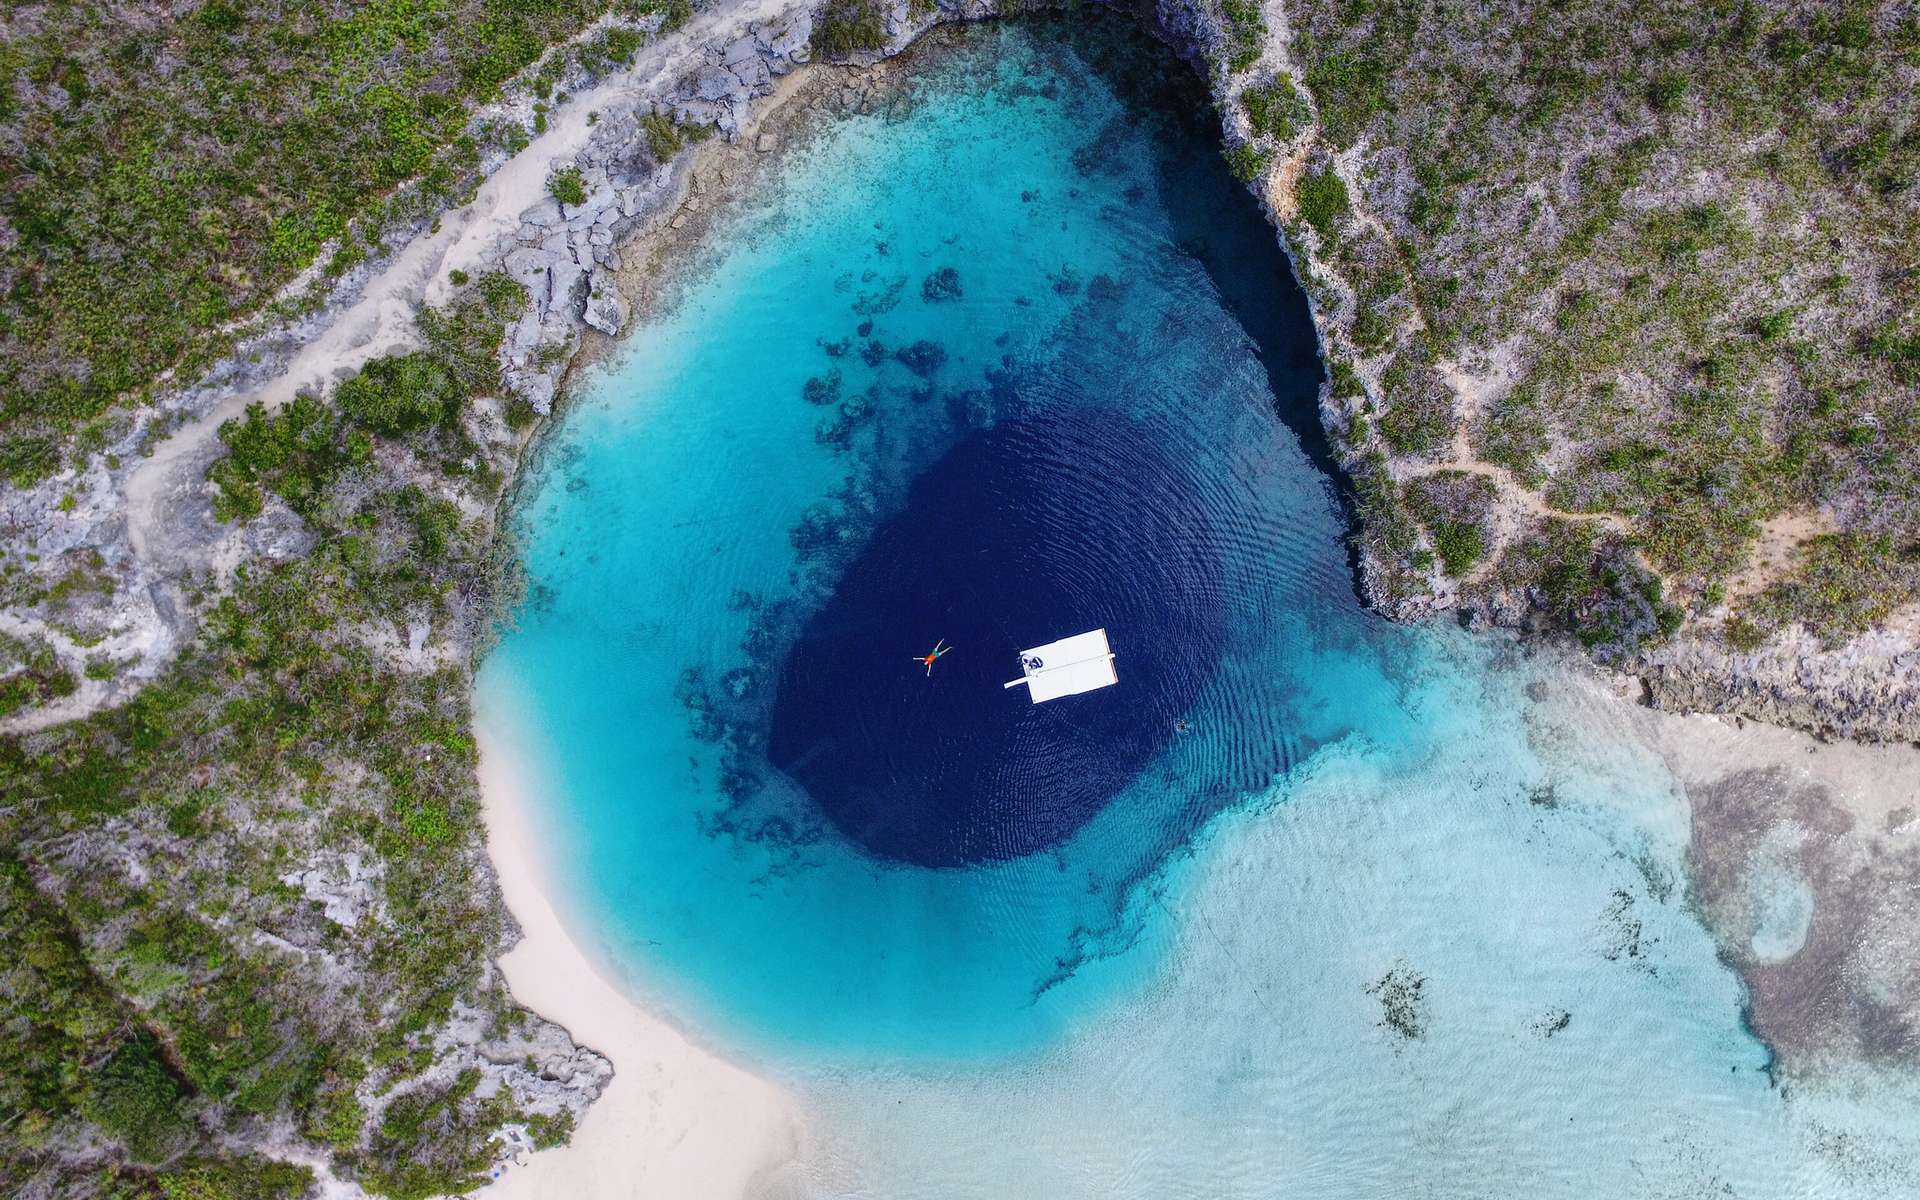 Le trou bleu de Dean dans les Bahamas n'est autre qu'une doline immergée © Lucas Vimpere, flickr, CC BY-NC-ND 2.0